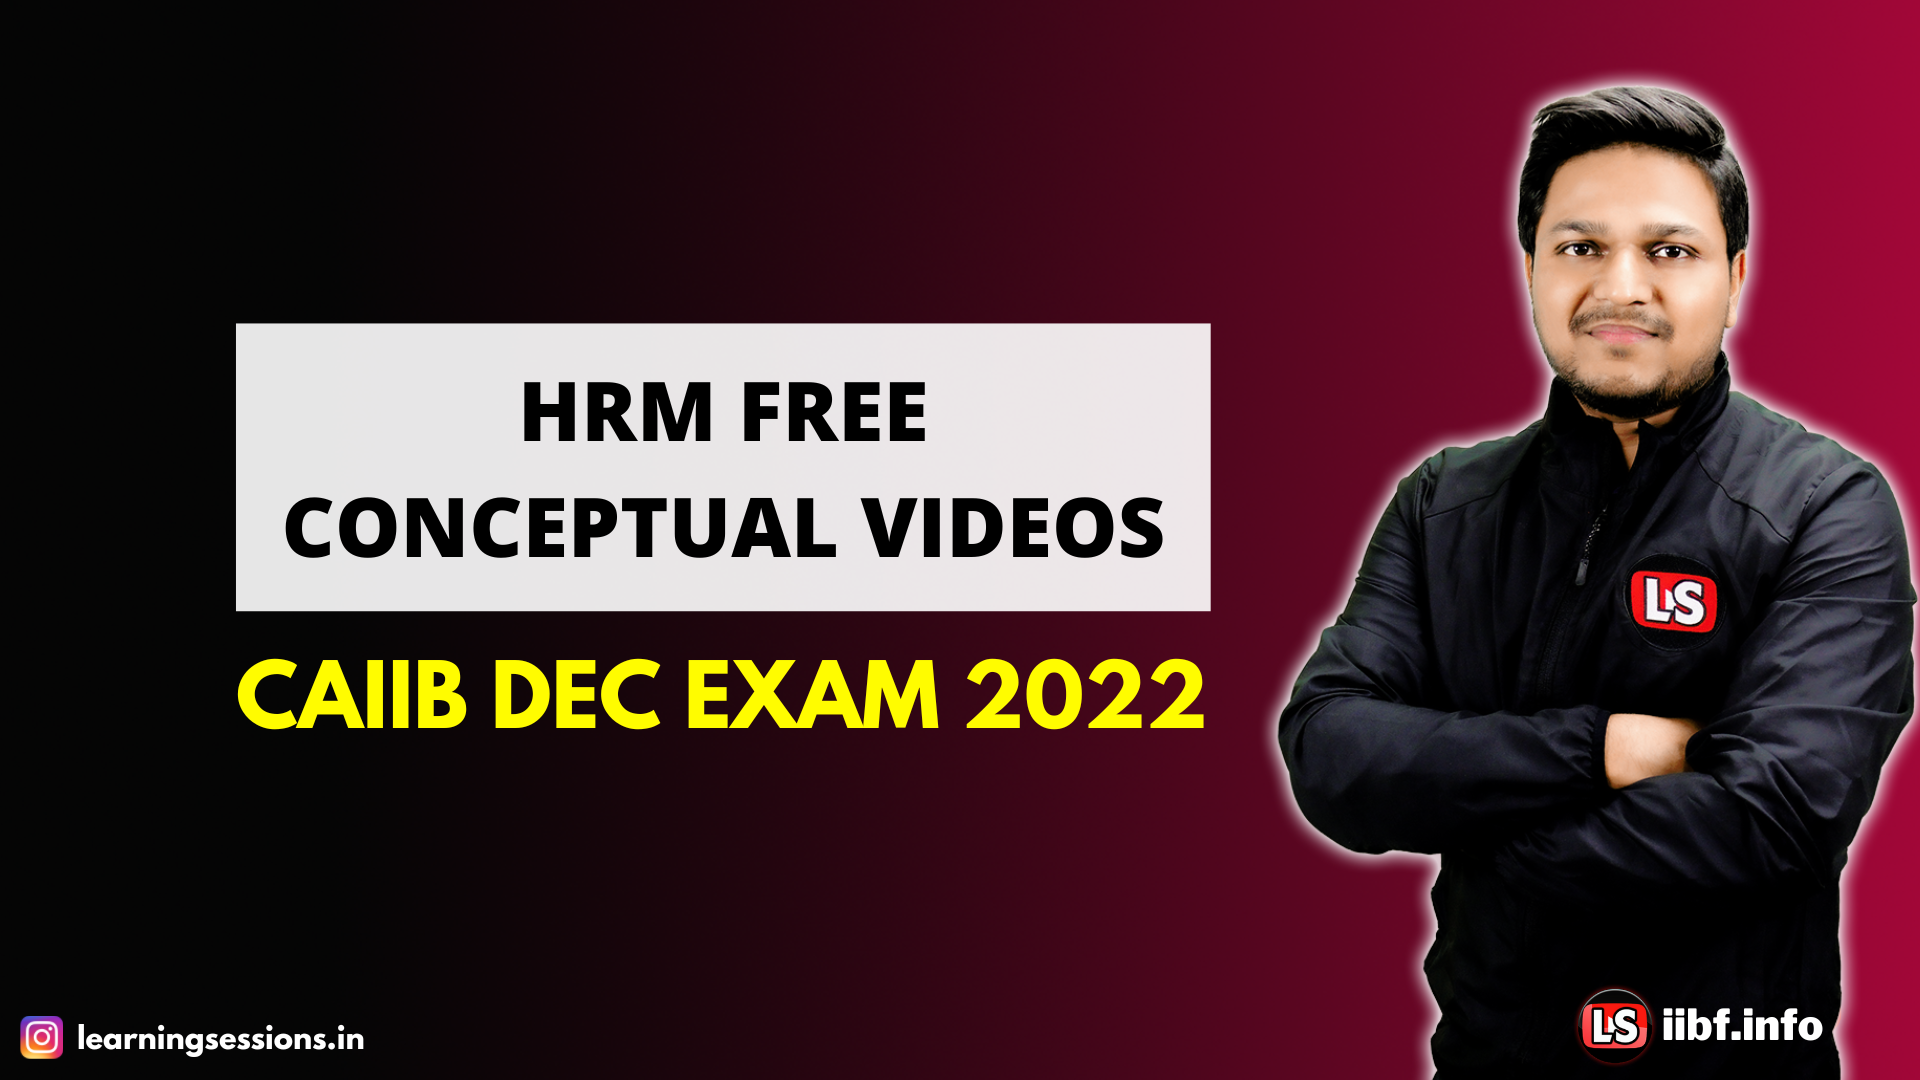 HRM FREE CONCEPTUAL VIDEOS | CAIIB DEC EXAM 2022